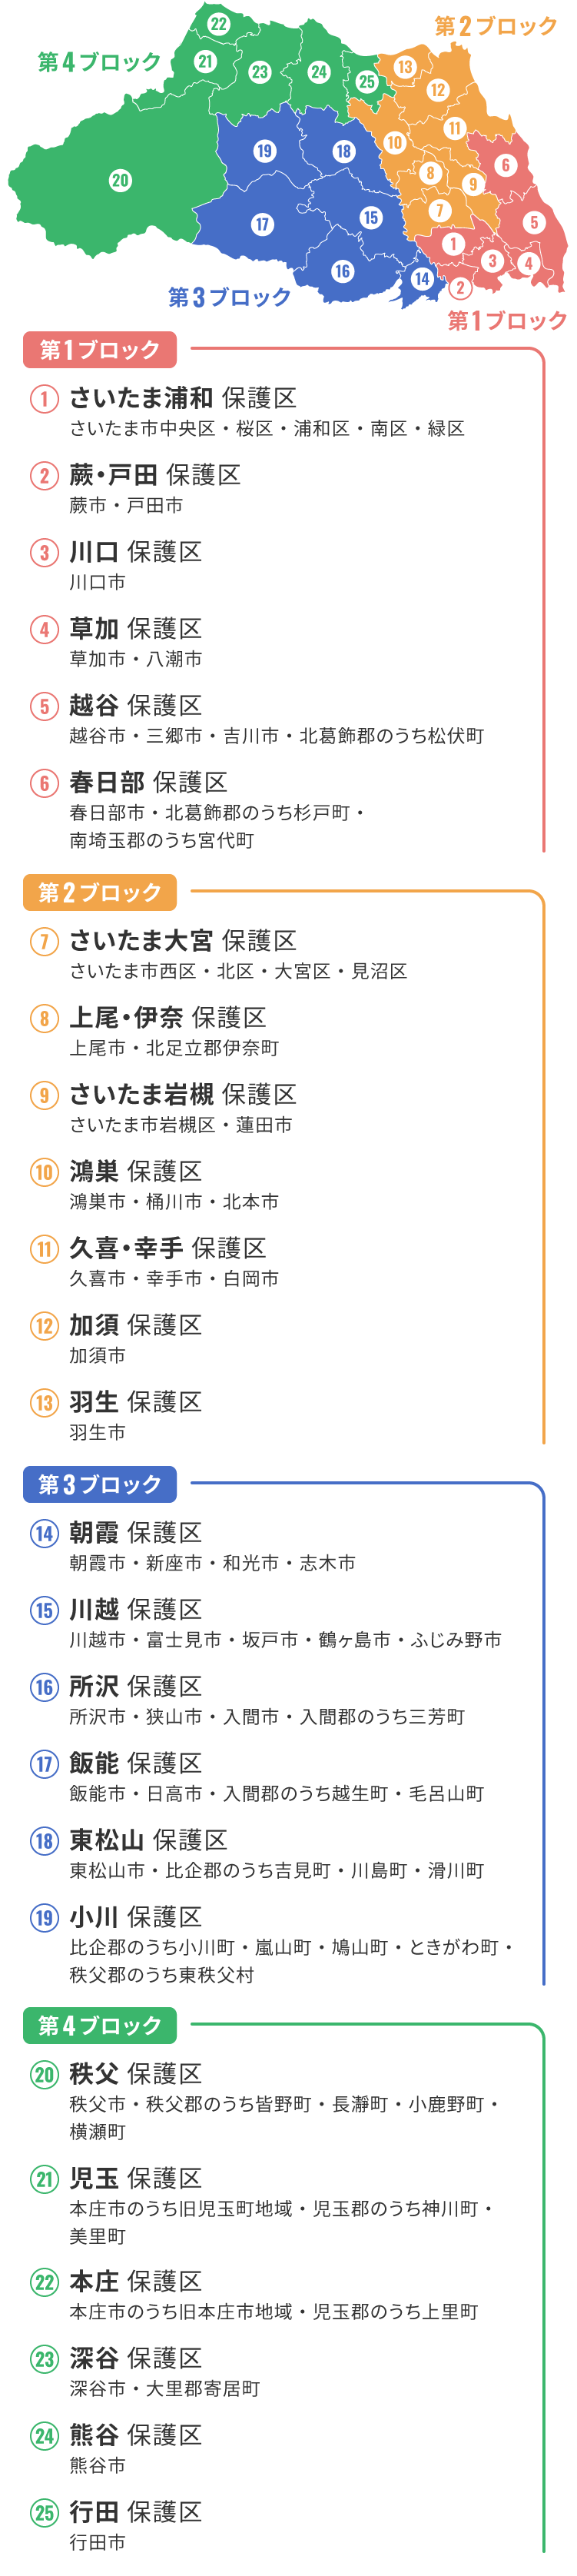 埼玉県内保護区更生市町村一覧の地図